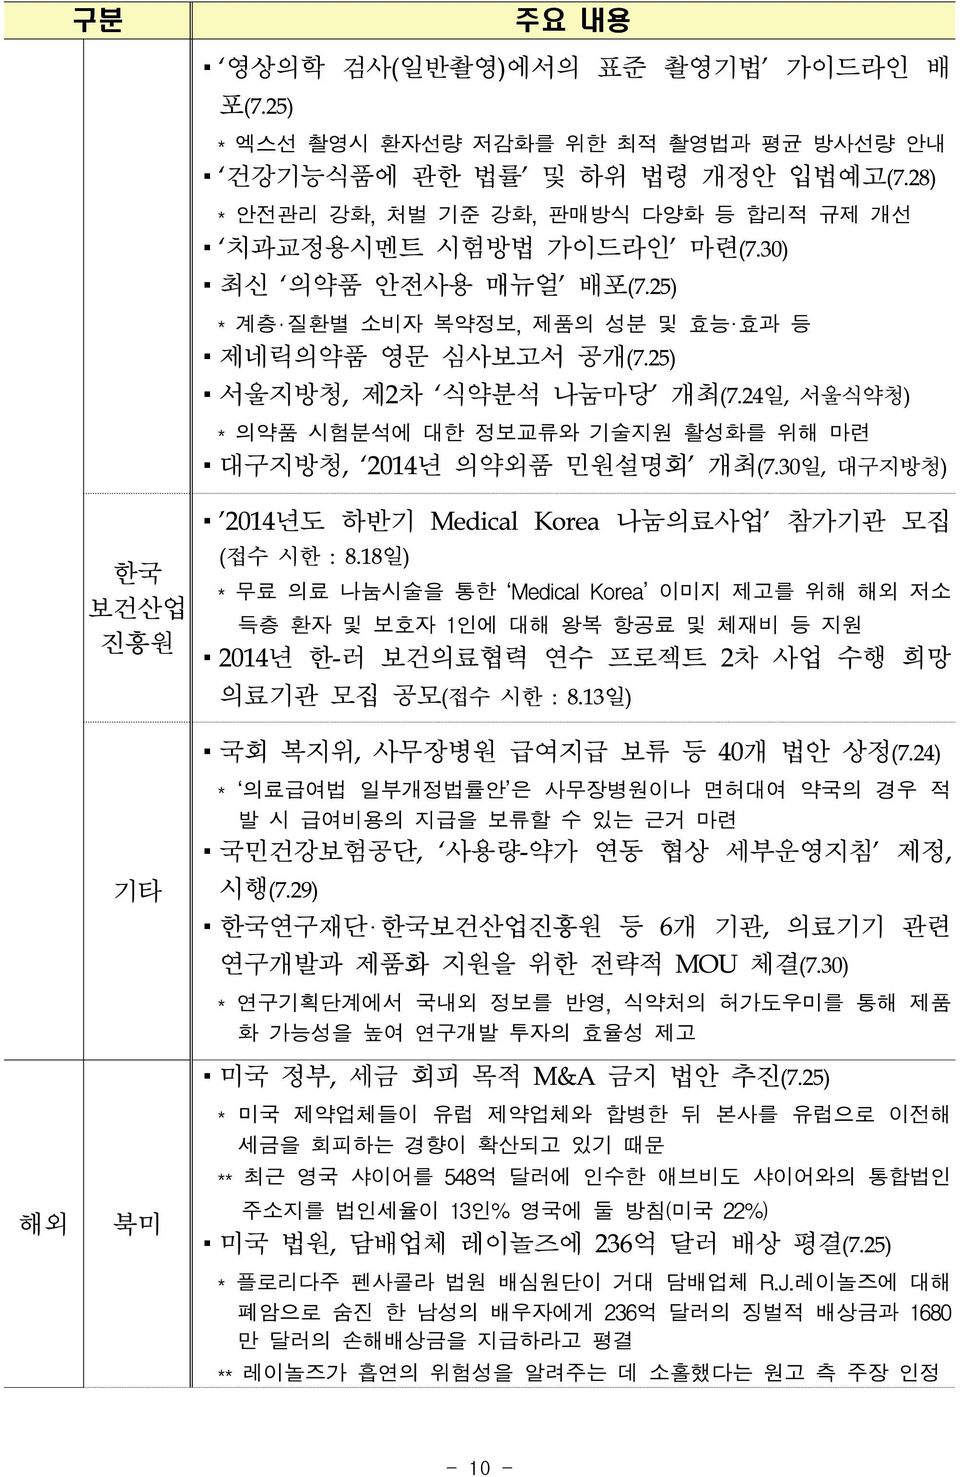 30일, 대구지방청) '2014년도 하반기 Medical Korea 나눔의료사업' 참가기관 모집 (접수 시한 : 8.